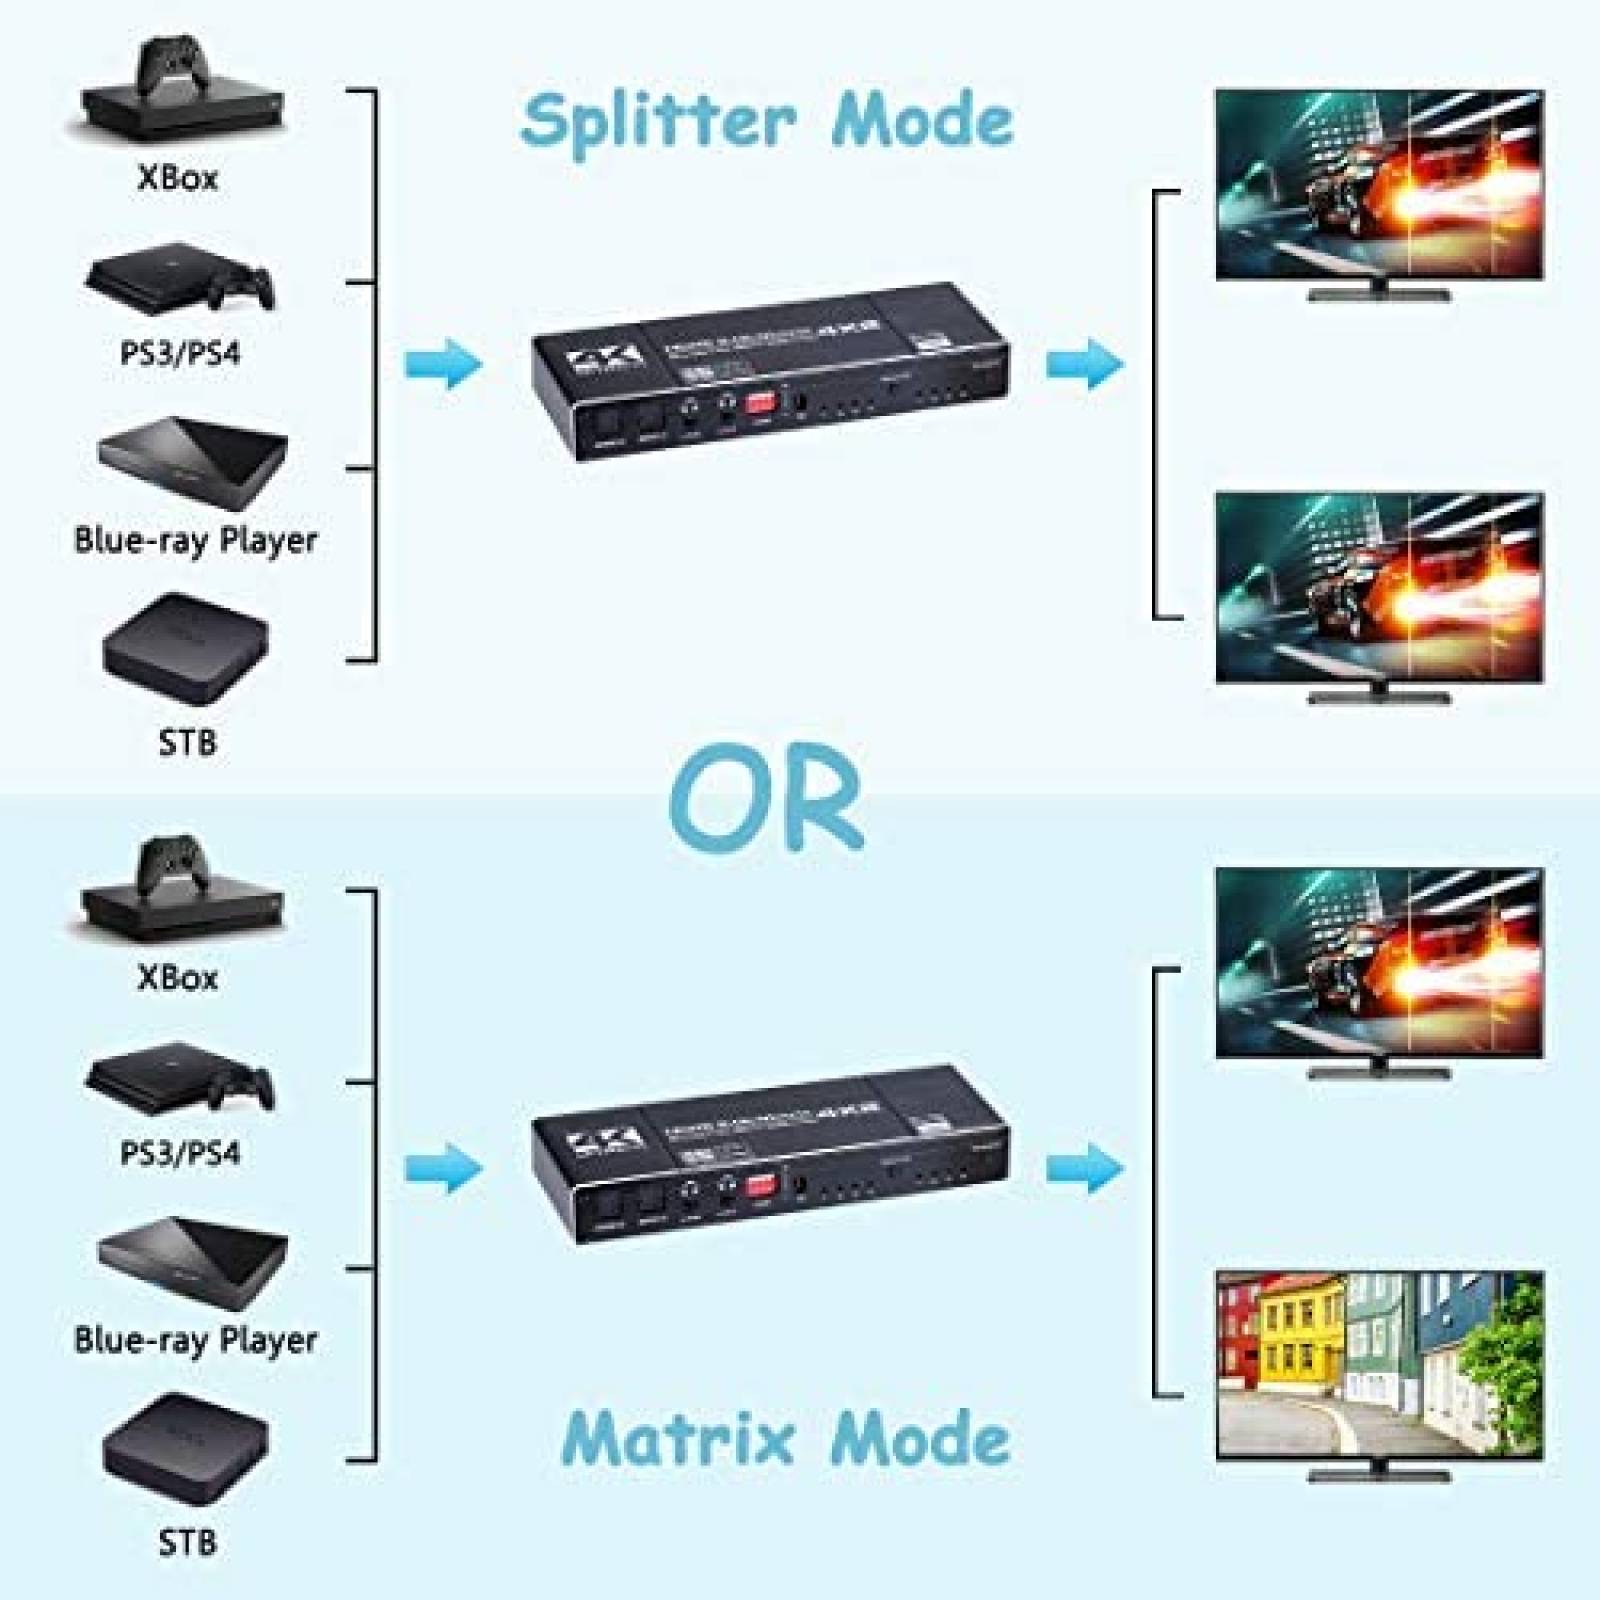 Conmutador HDMI switch matrix 4Entradas, 2 Salidas. Con mando a